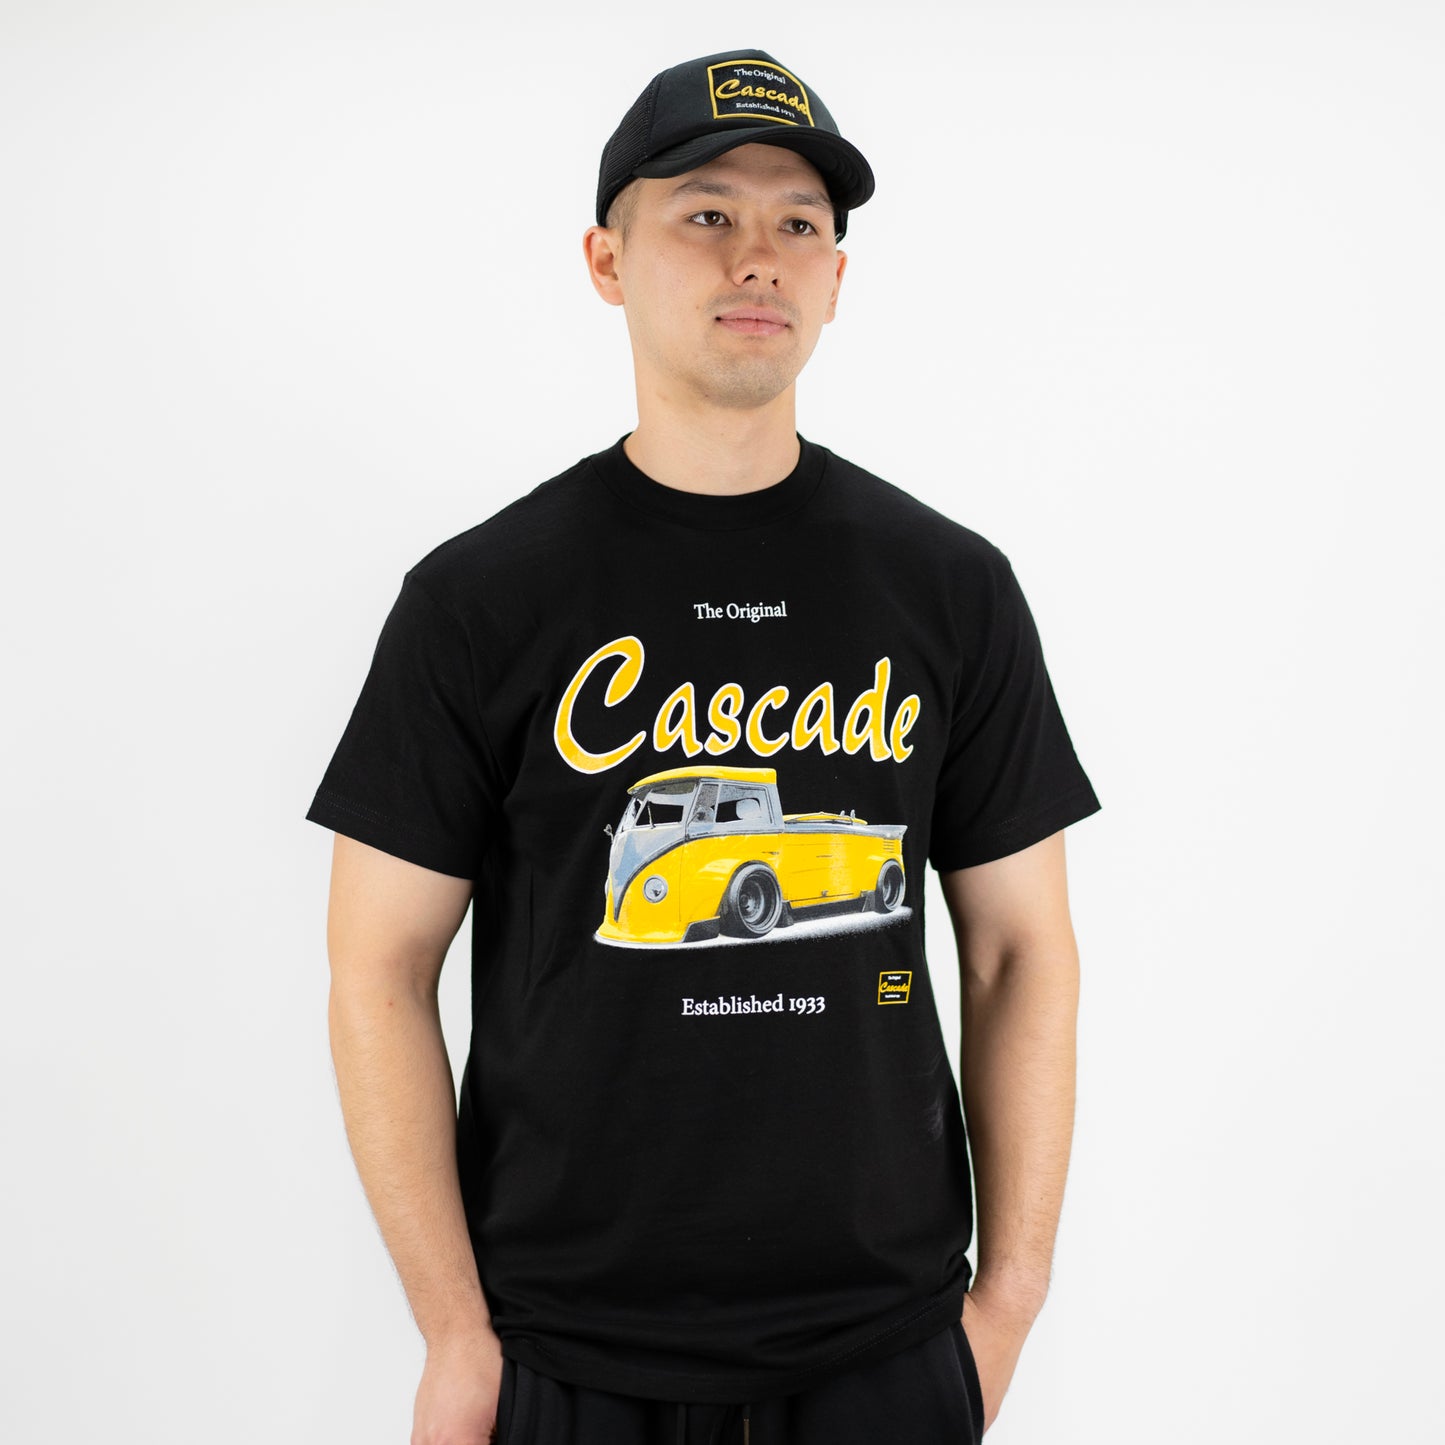 The Original Cascade Bus T-Shirt